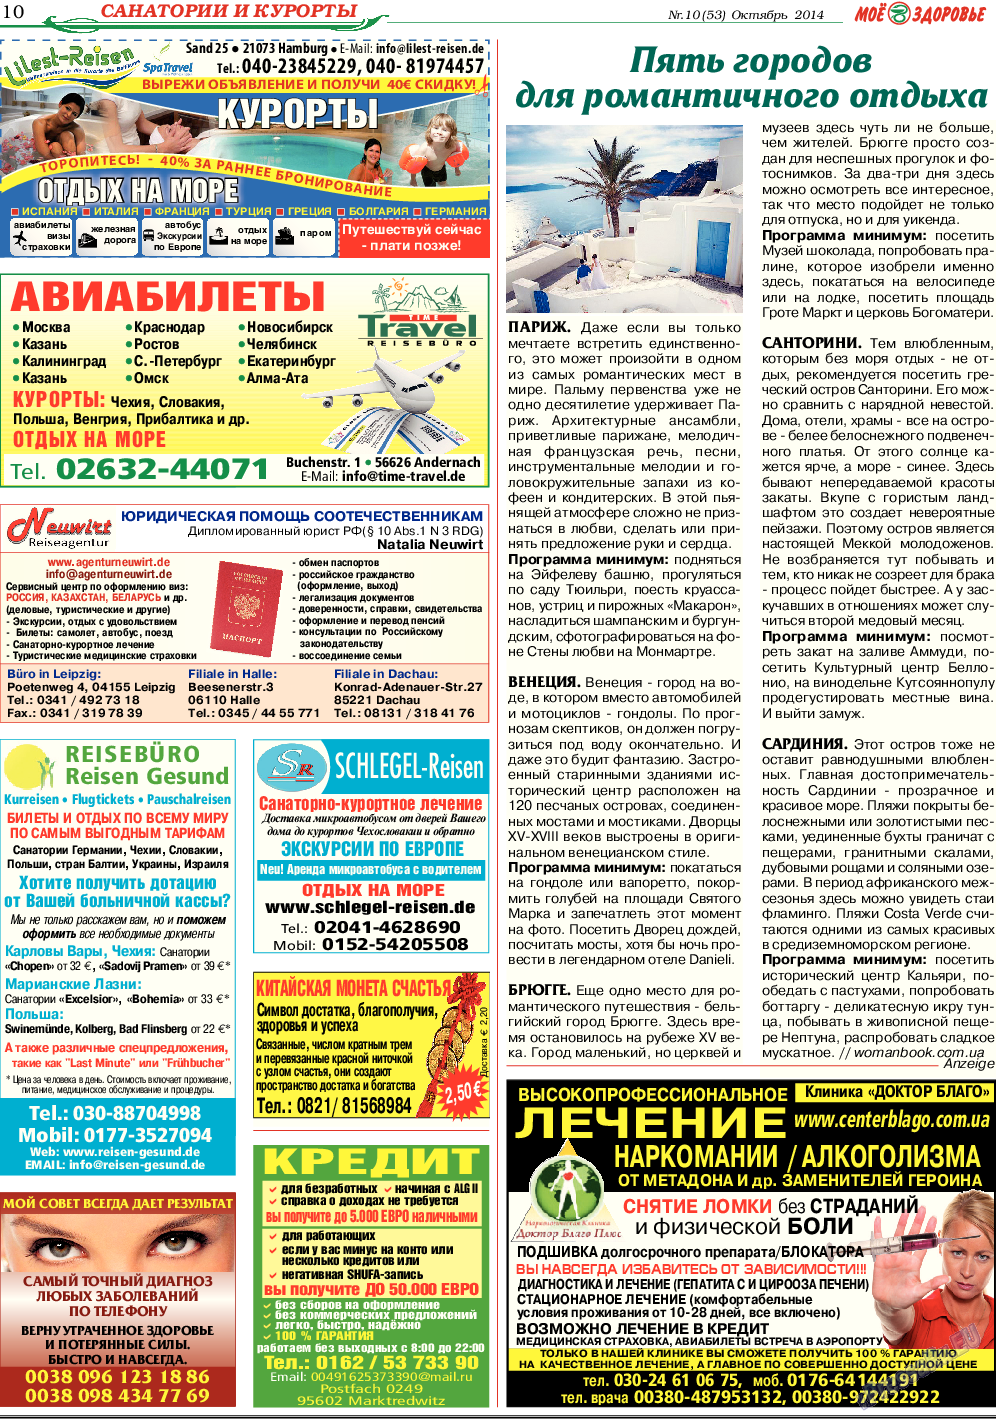 Кругозор (газета). 2014 год, номер 10, стр. 10